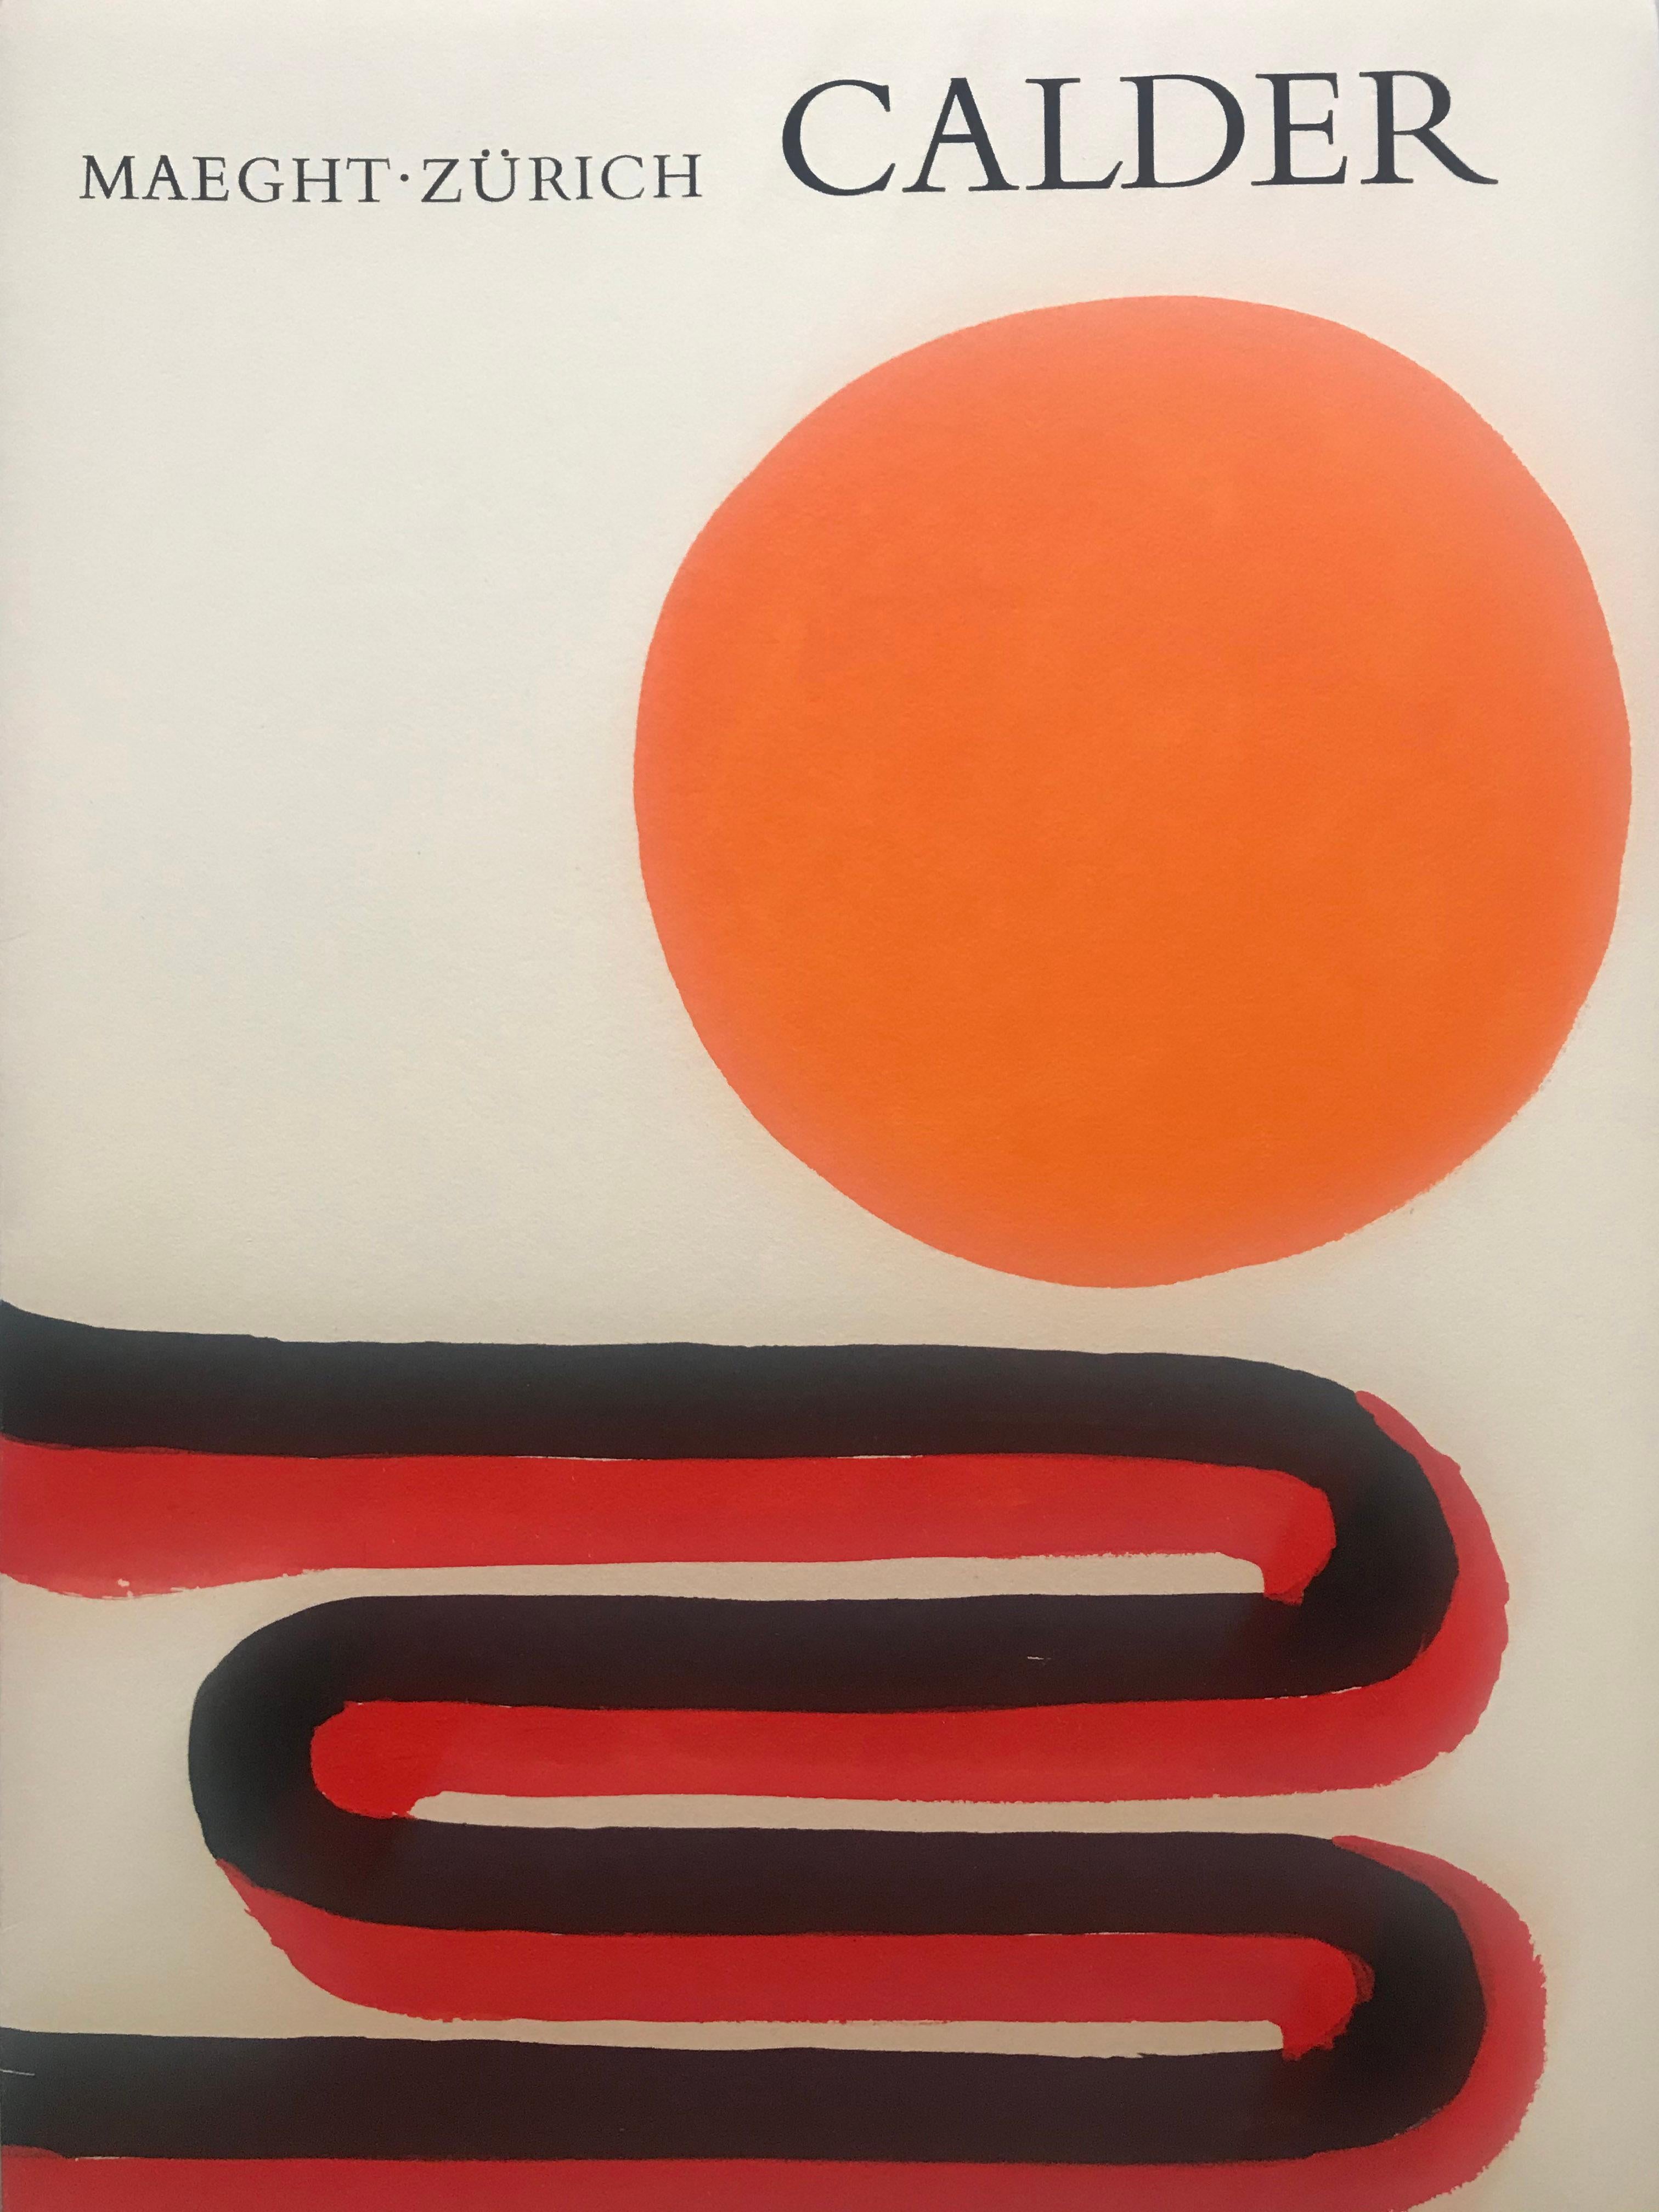 Calder retrospektiv
(Maeght Zürich)
Portfolio nicht paginiert 
26 Seiten
c.giedion welcker (auteur)
Maeght (Herausgeber)
1973
Enthält 4 Lithographien in Farbe, darunter eine Doppelseite 
23,4 cm x 31,9 cm
Parfait état 
290 Euro